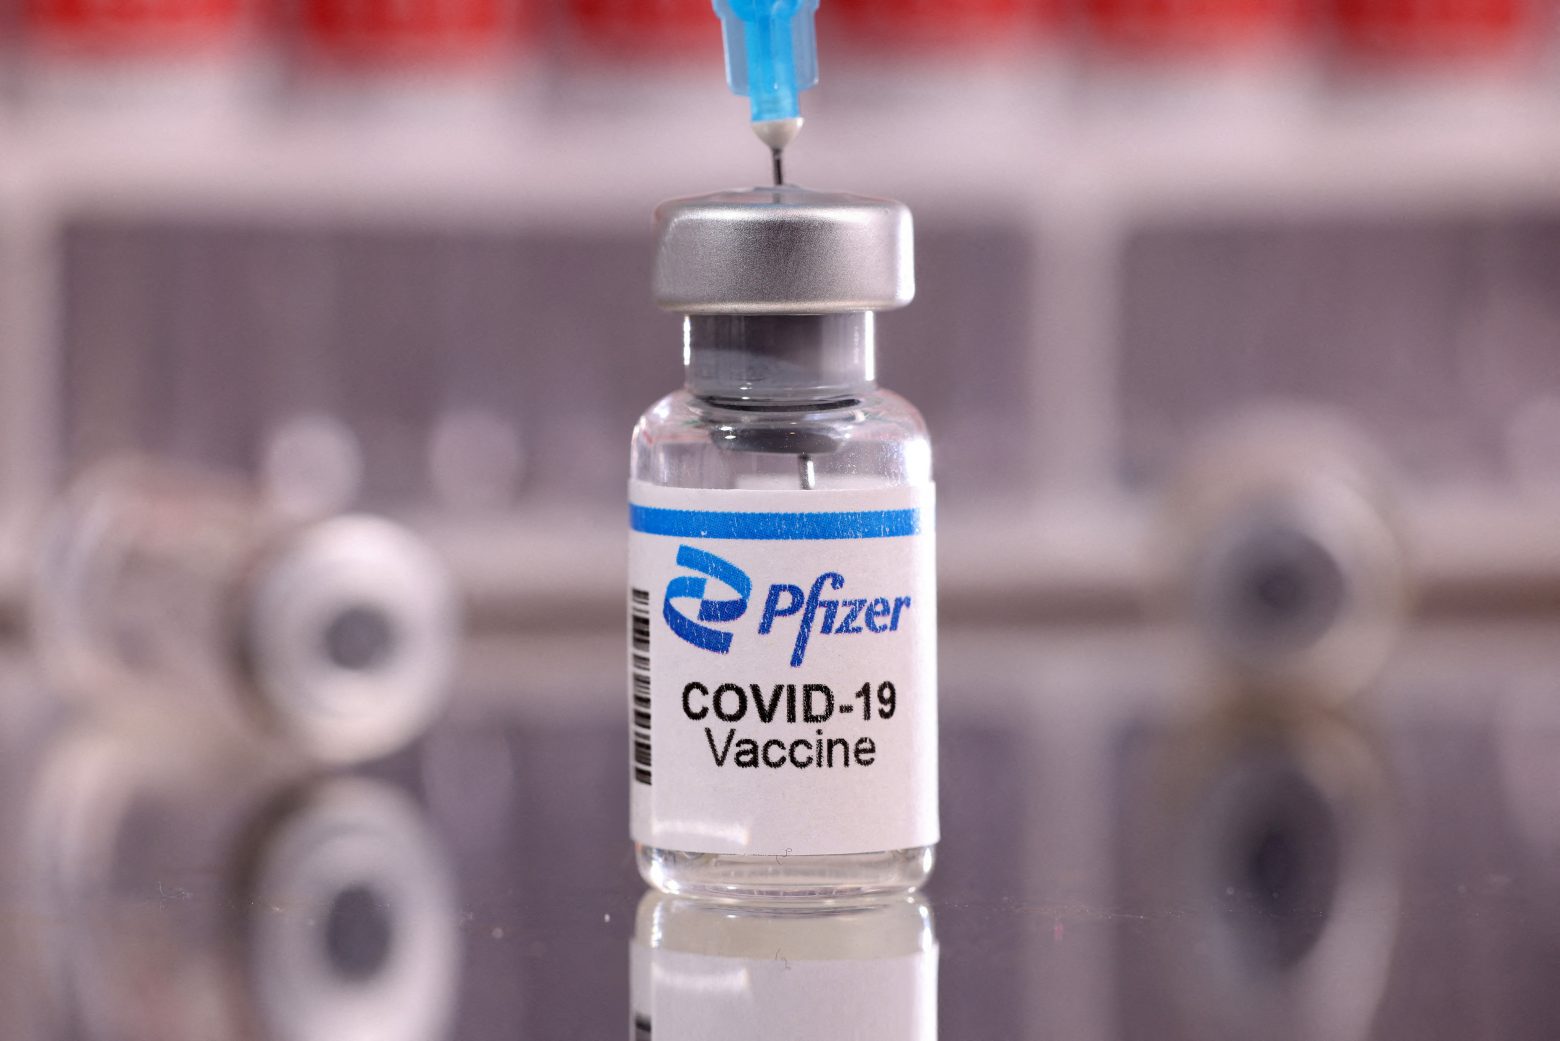 ΗΠΑ - CDC: Το εμβόλιο Pfizer μείωσε σημαντικά τον κίνδυνο μόλυνσης σε παιδιά και εφήβους